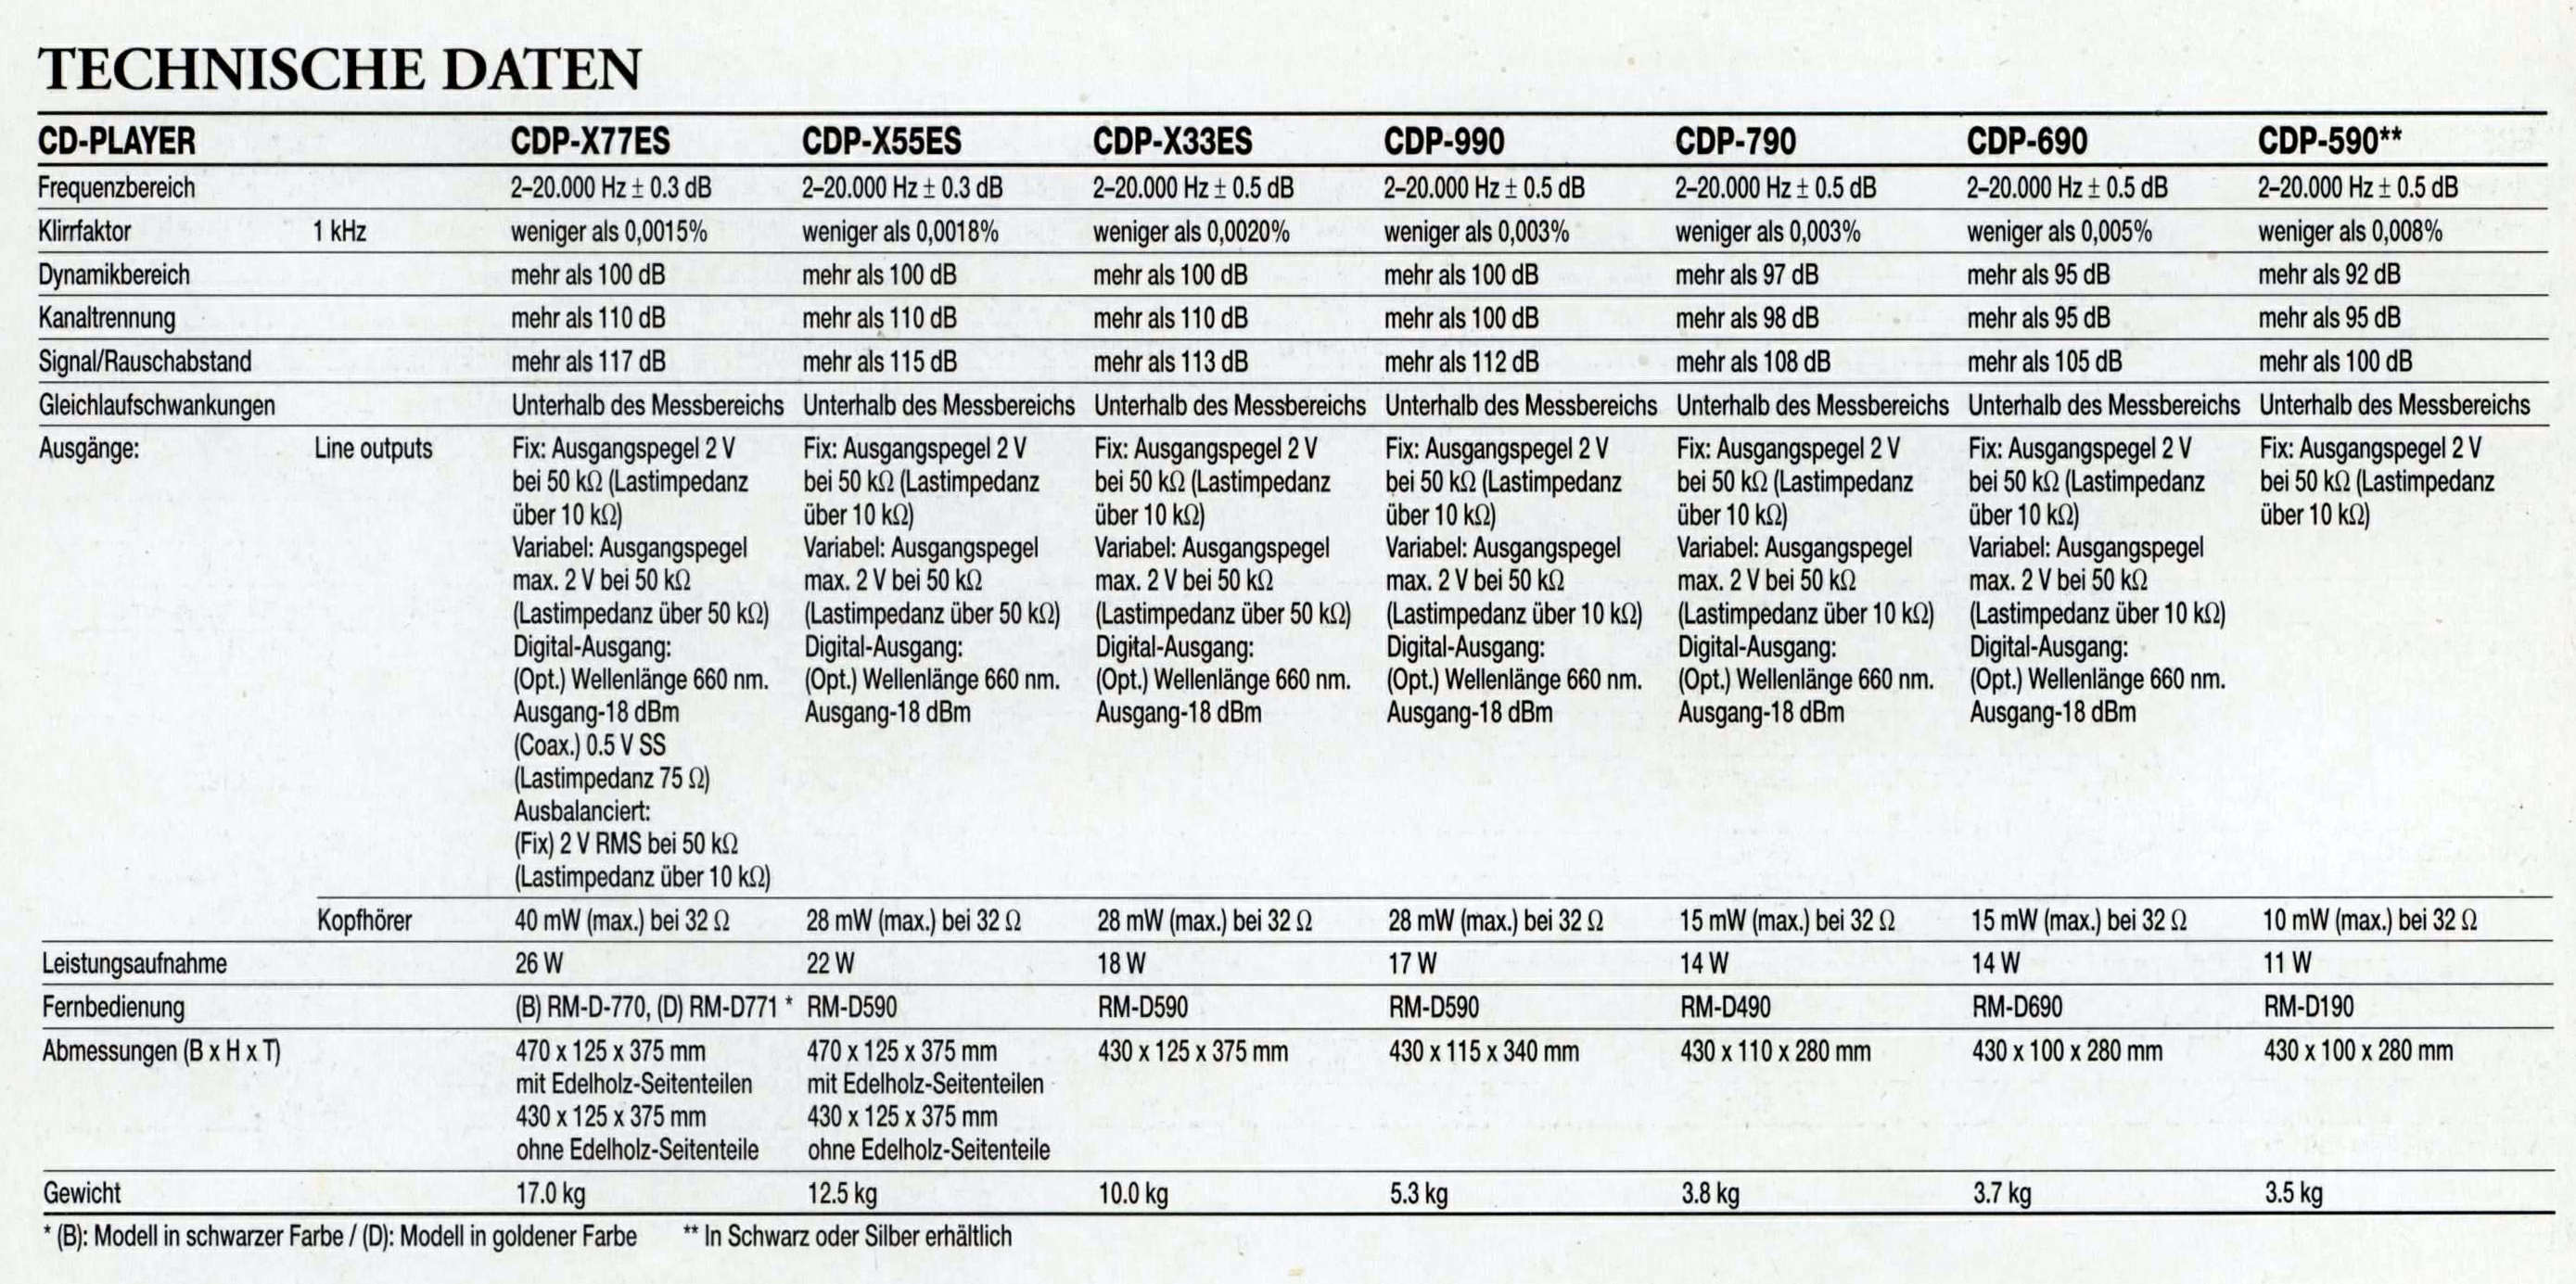 Sony CDP-590-690-790-990-X 33-55-77 ES-Daten 1991.jpg